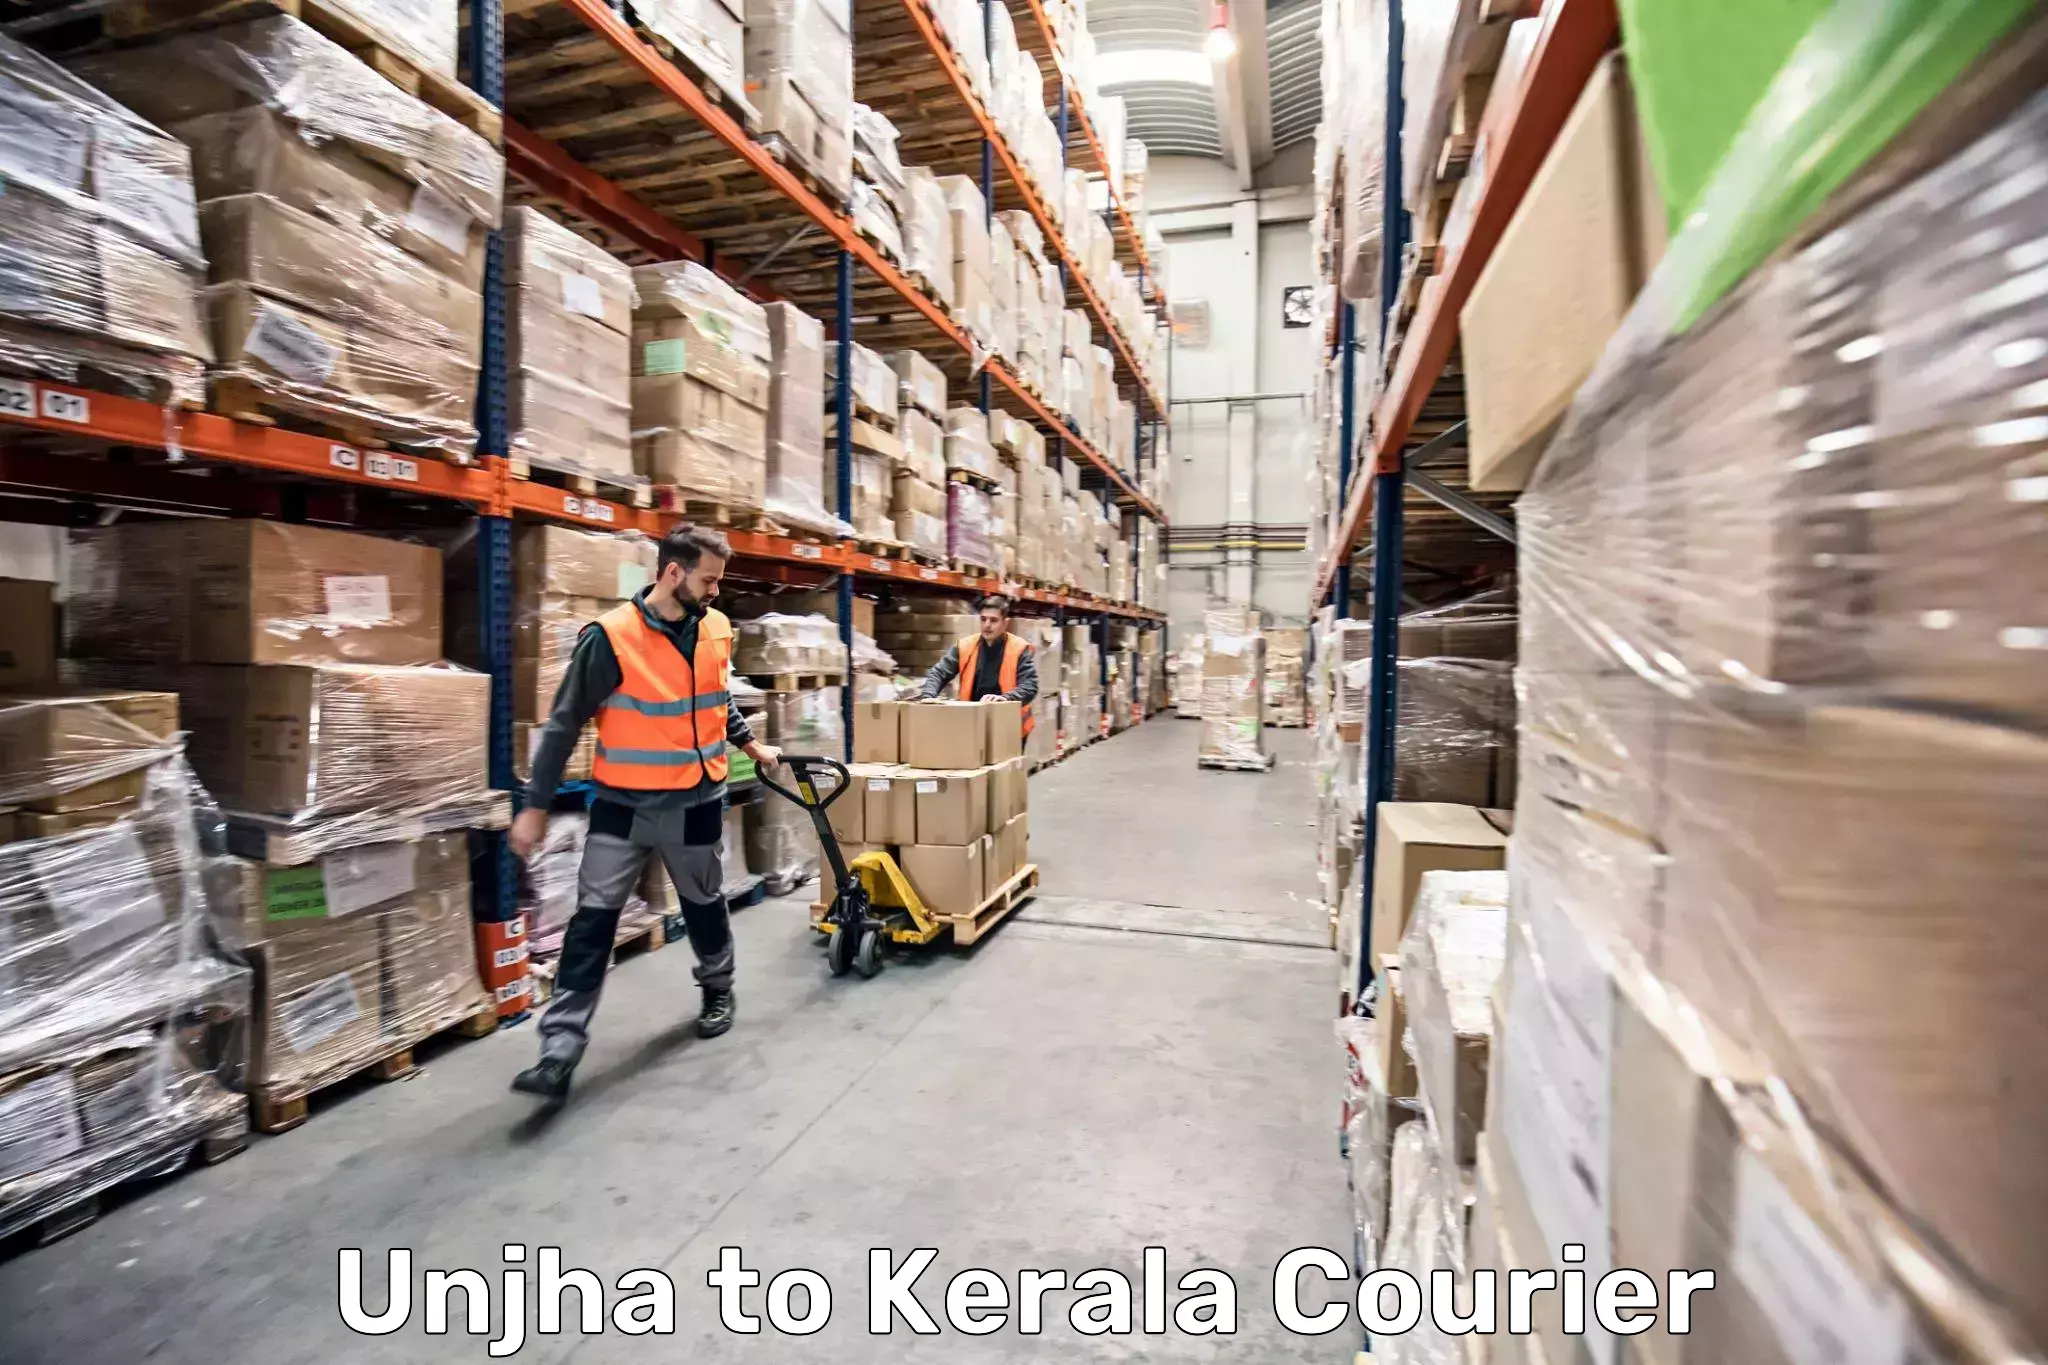 Hassle-free luggage shipping Unjha to Kuthiathode